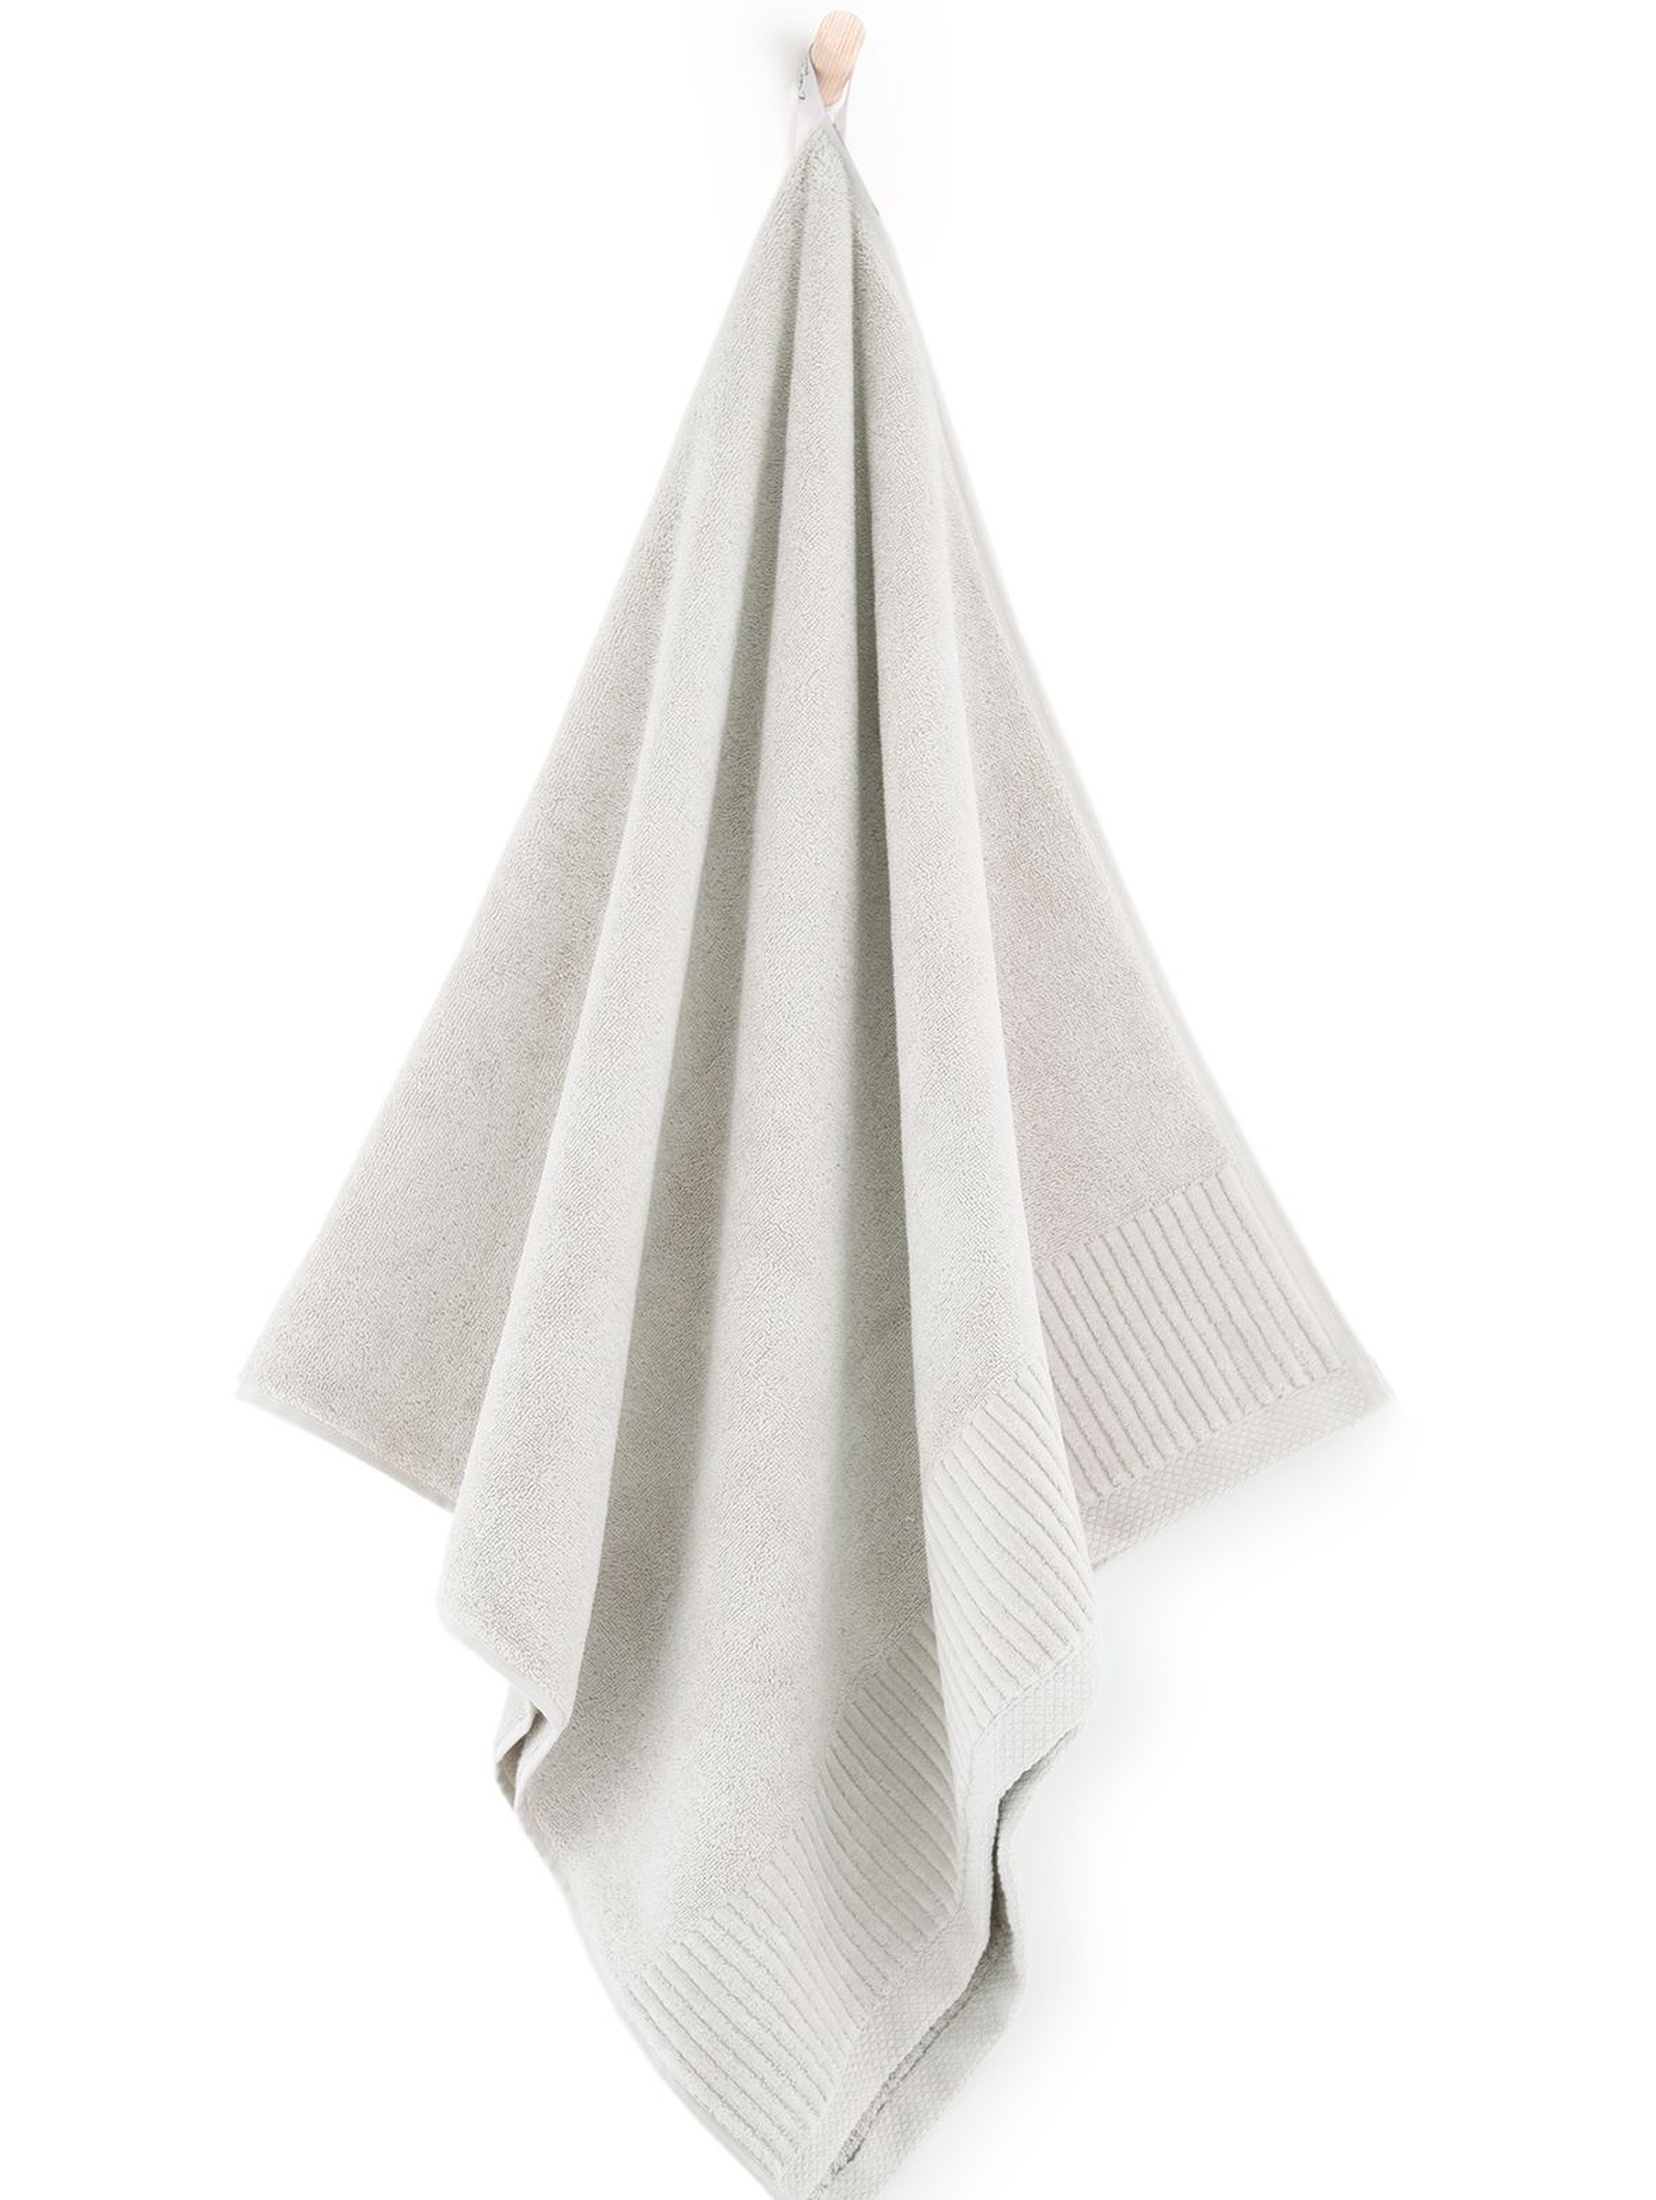 Ręcznik z bawełny egipskiej Lisbona 50x90cm